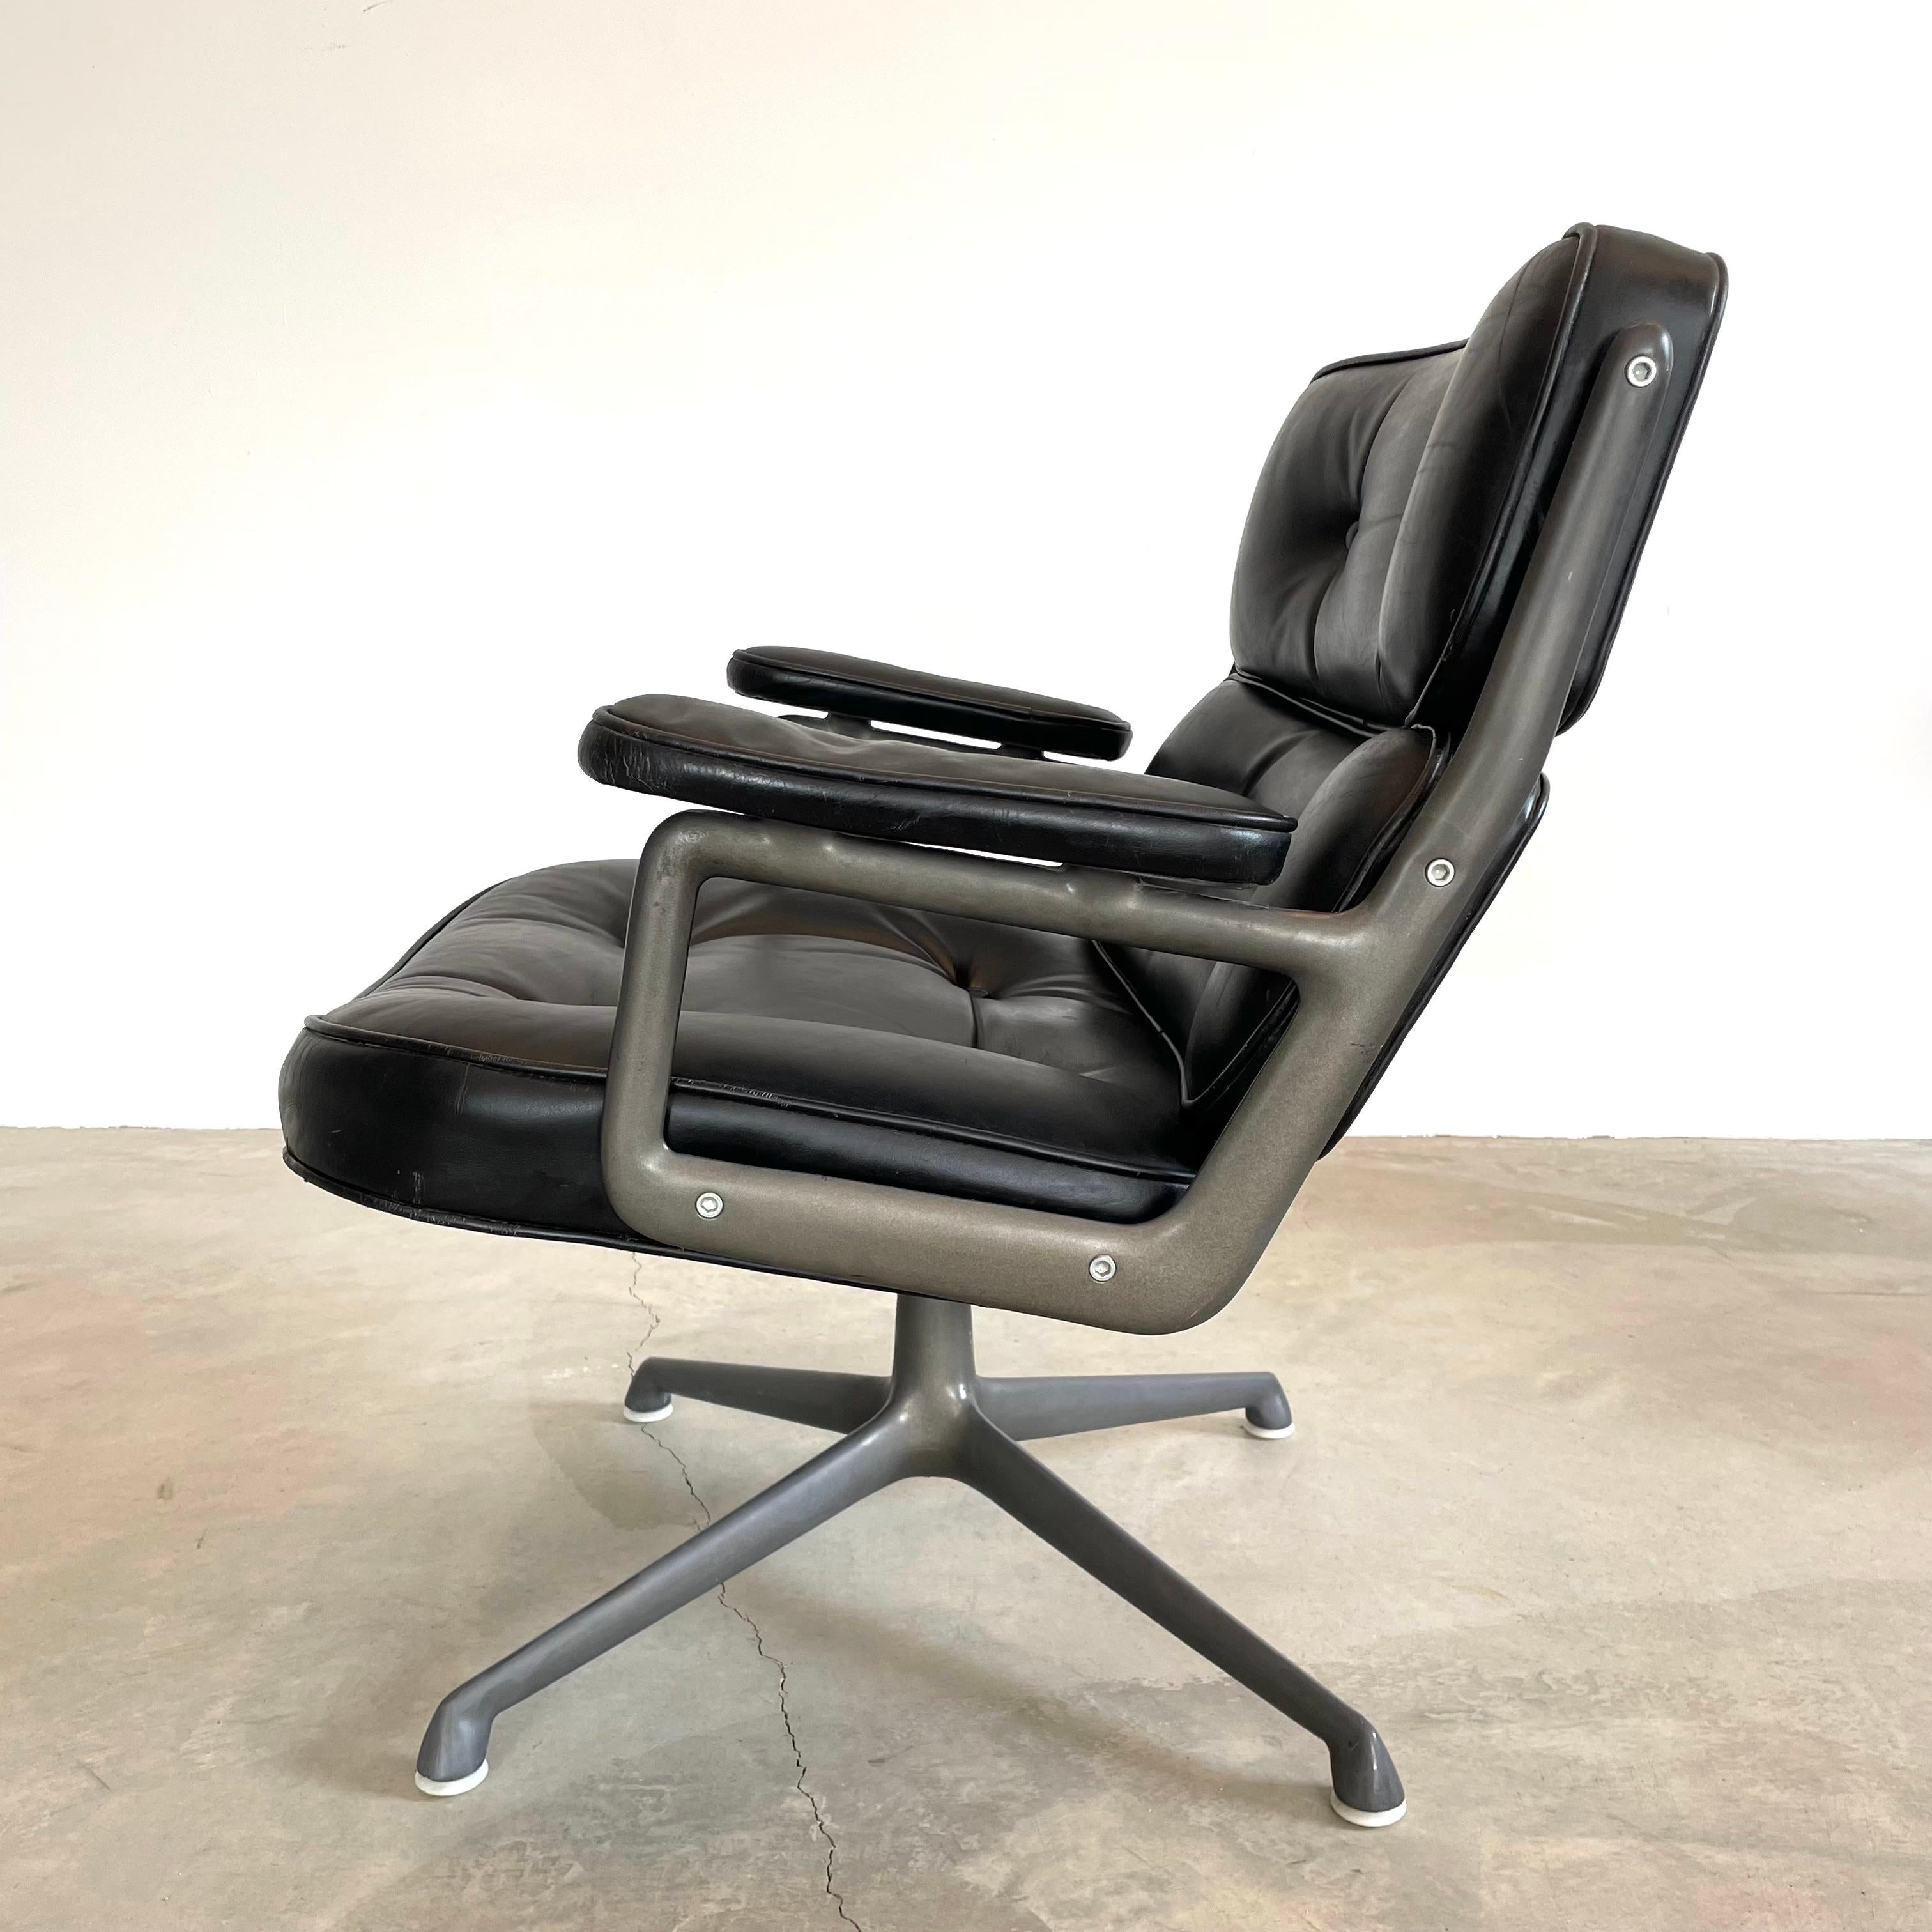 Chaise classique Eames Time Life Lobby Chair en cuir noir pour Herman Miller. Le cuir noir est en bon état et présente des traces d'usure comme indiqué. Extrêmement confortable et usé. La chaise pivote. Hauteur réglable. Le métal et le cuir sont